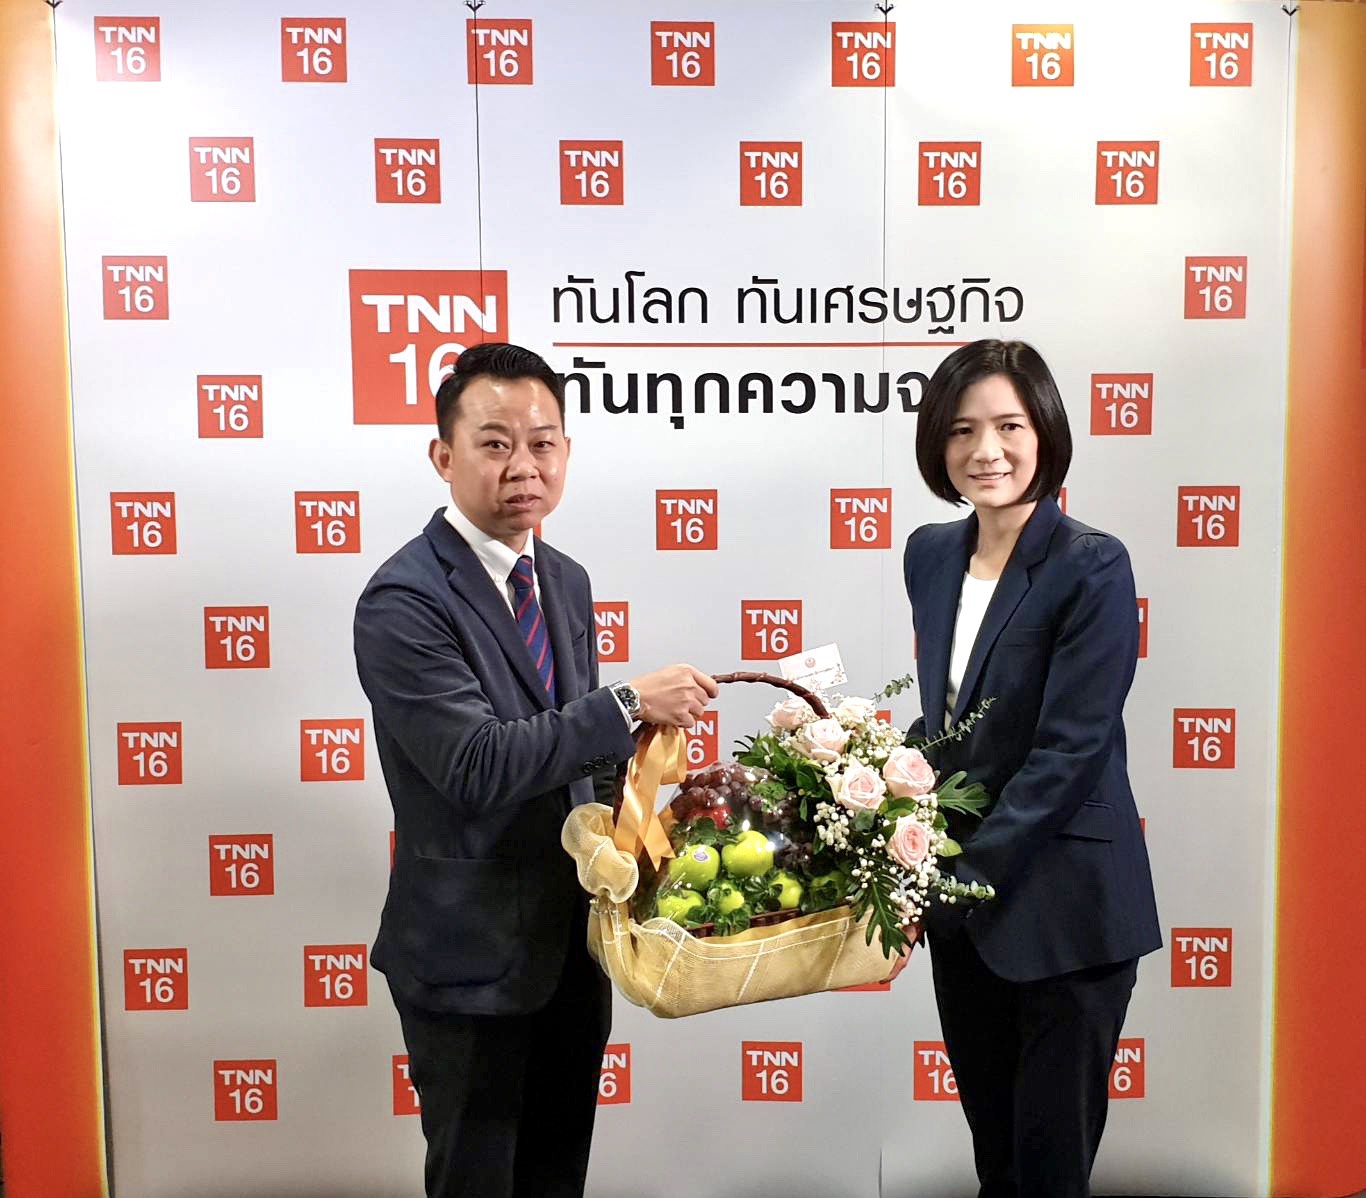 นายสาธิต วงศ์อนันต์นนท์ ผู้อำนวยการสำนักประชาสัมพันธ์ มอบกระเช้าดอกไม้แสดงความยินดีเนื่องในโอกาสวันคล้ายวันก่อตั้งสถานีโทรทัศน์ TNN24 ครบรอบ 13 ปี